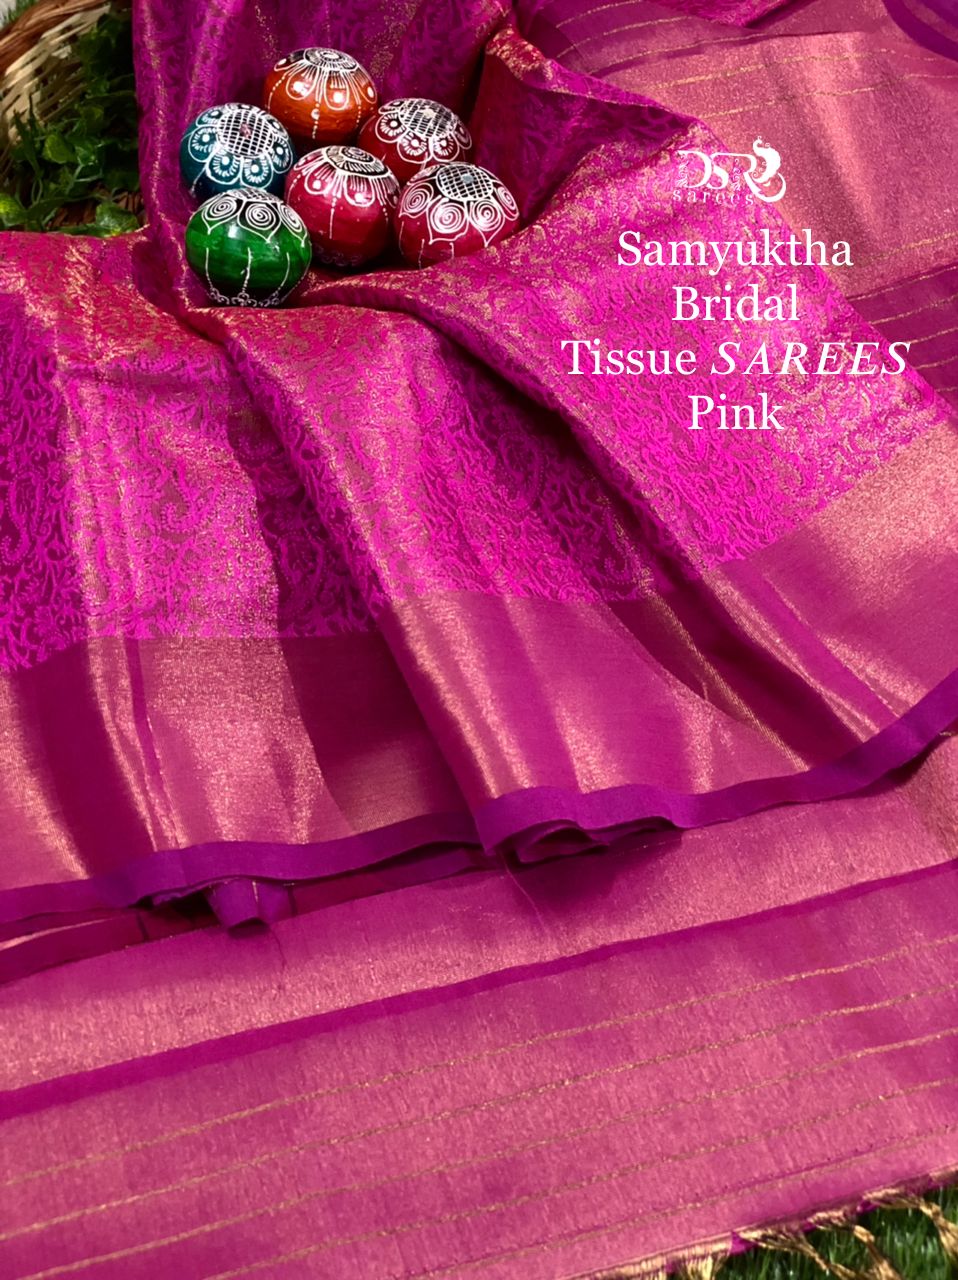 Samyuktha Bridal Tissue Sarees